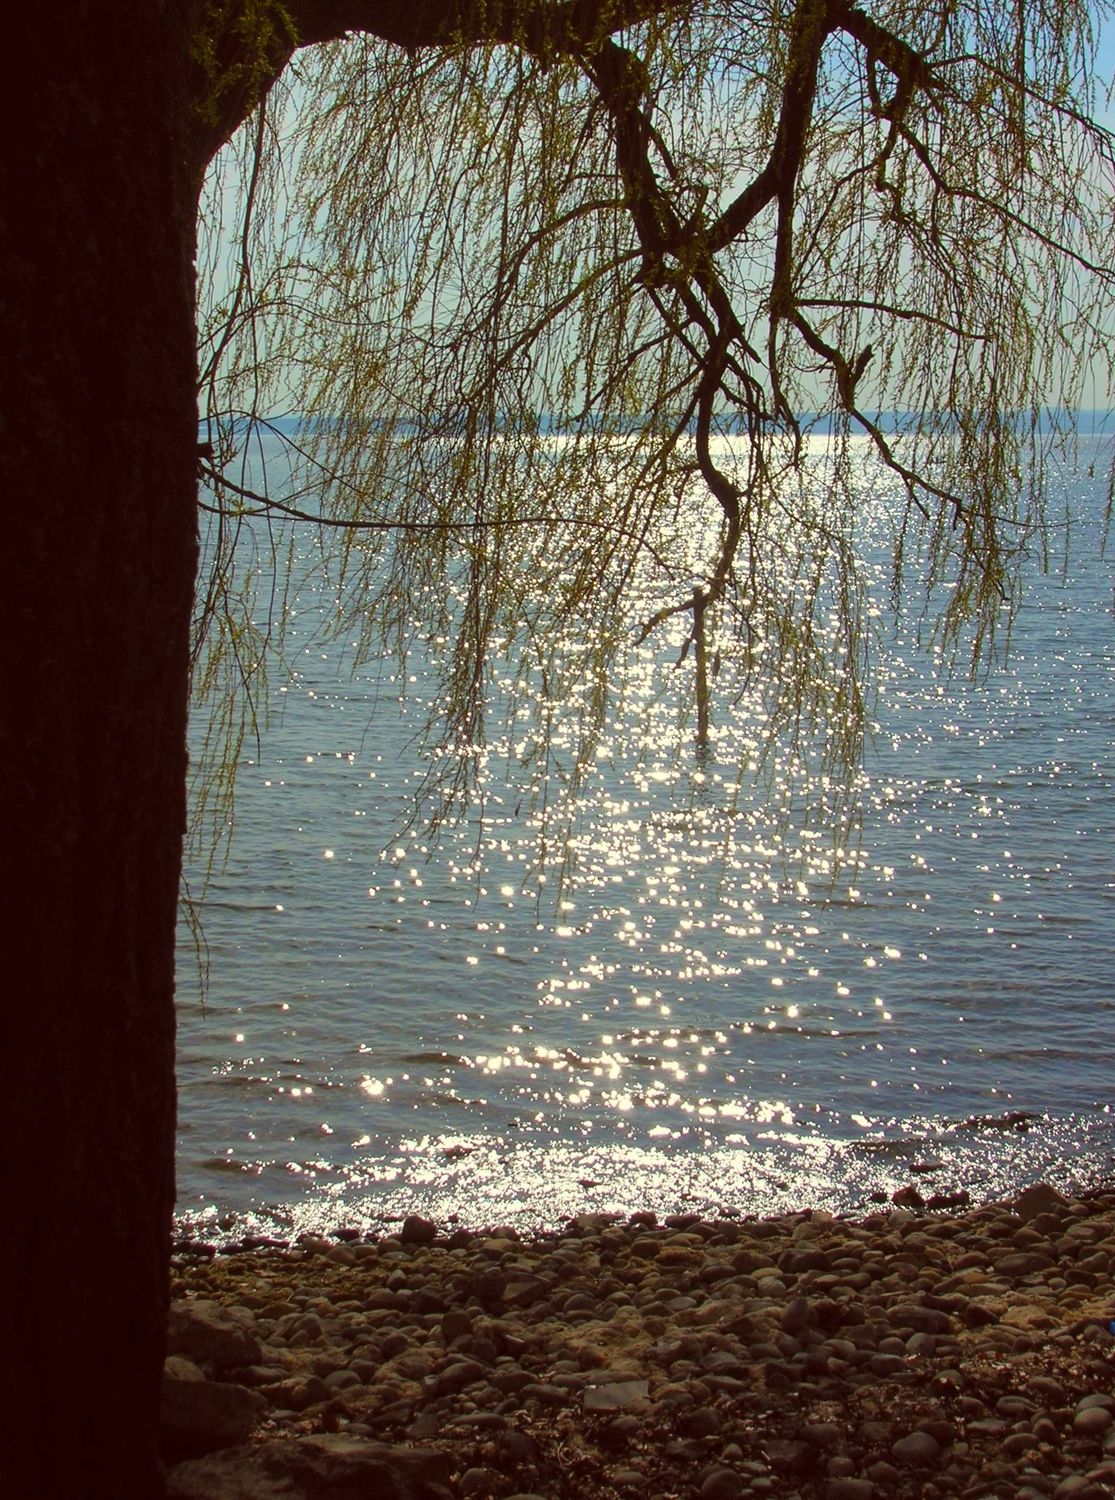 Bild mit Ruhe am See